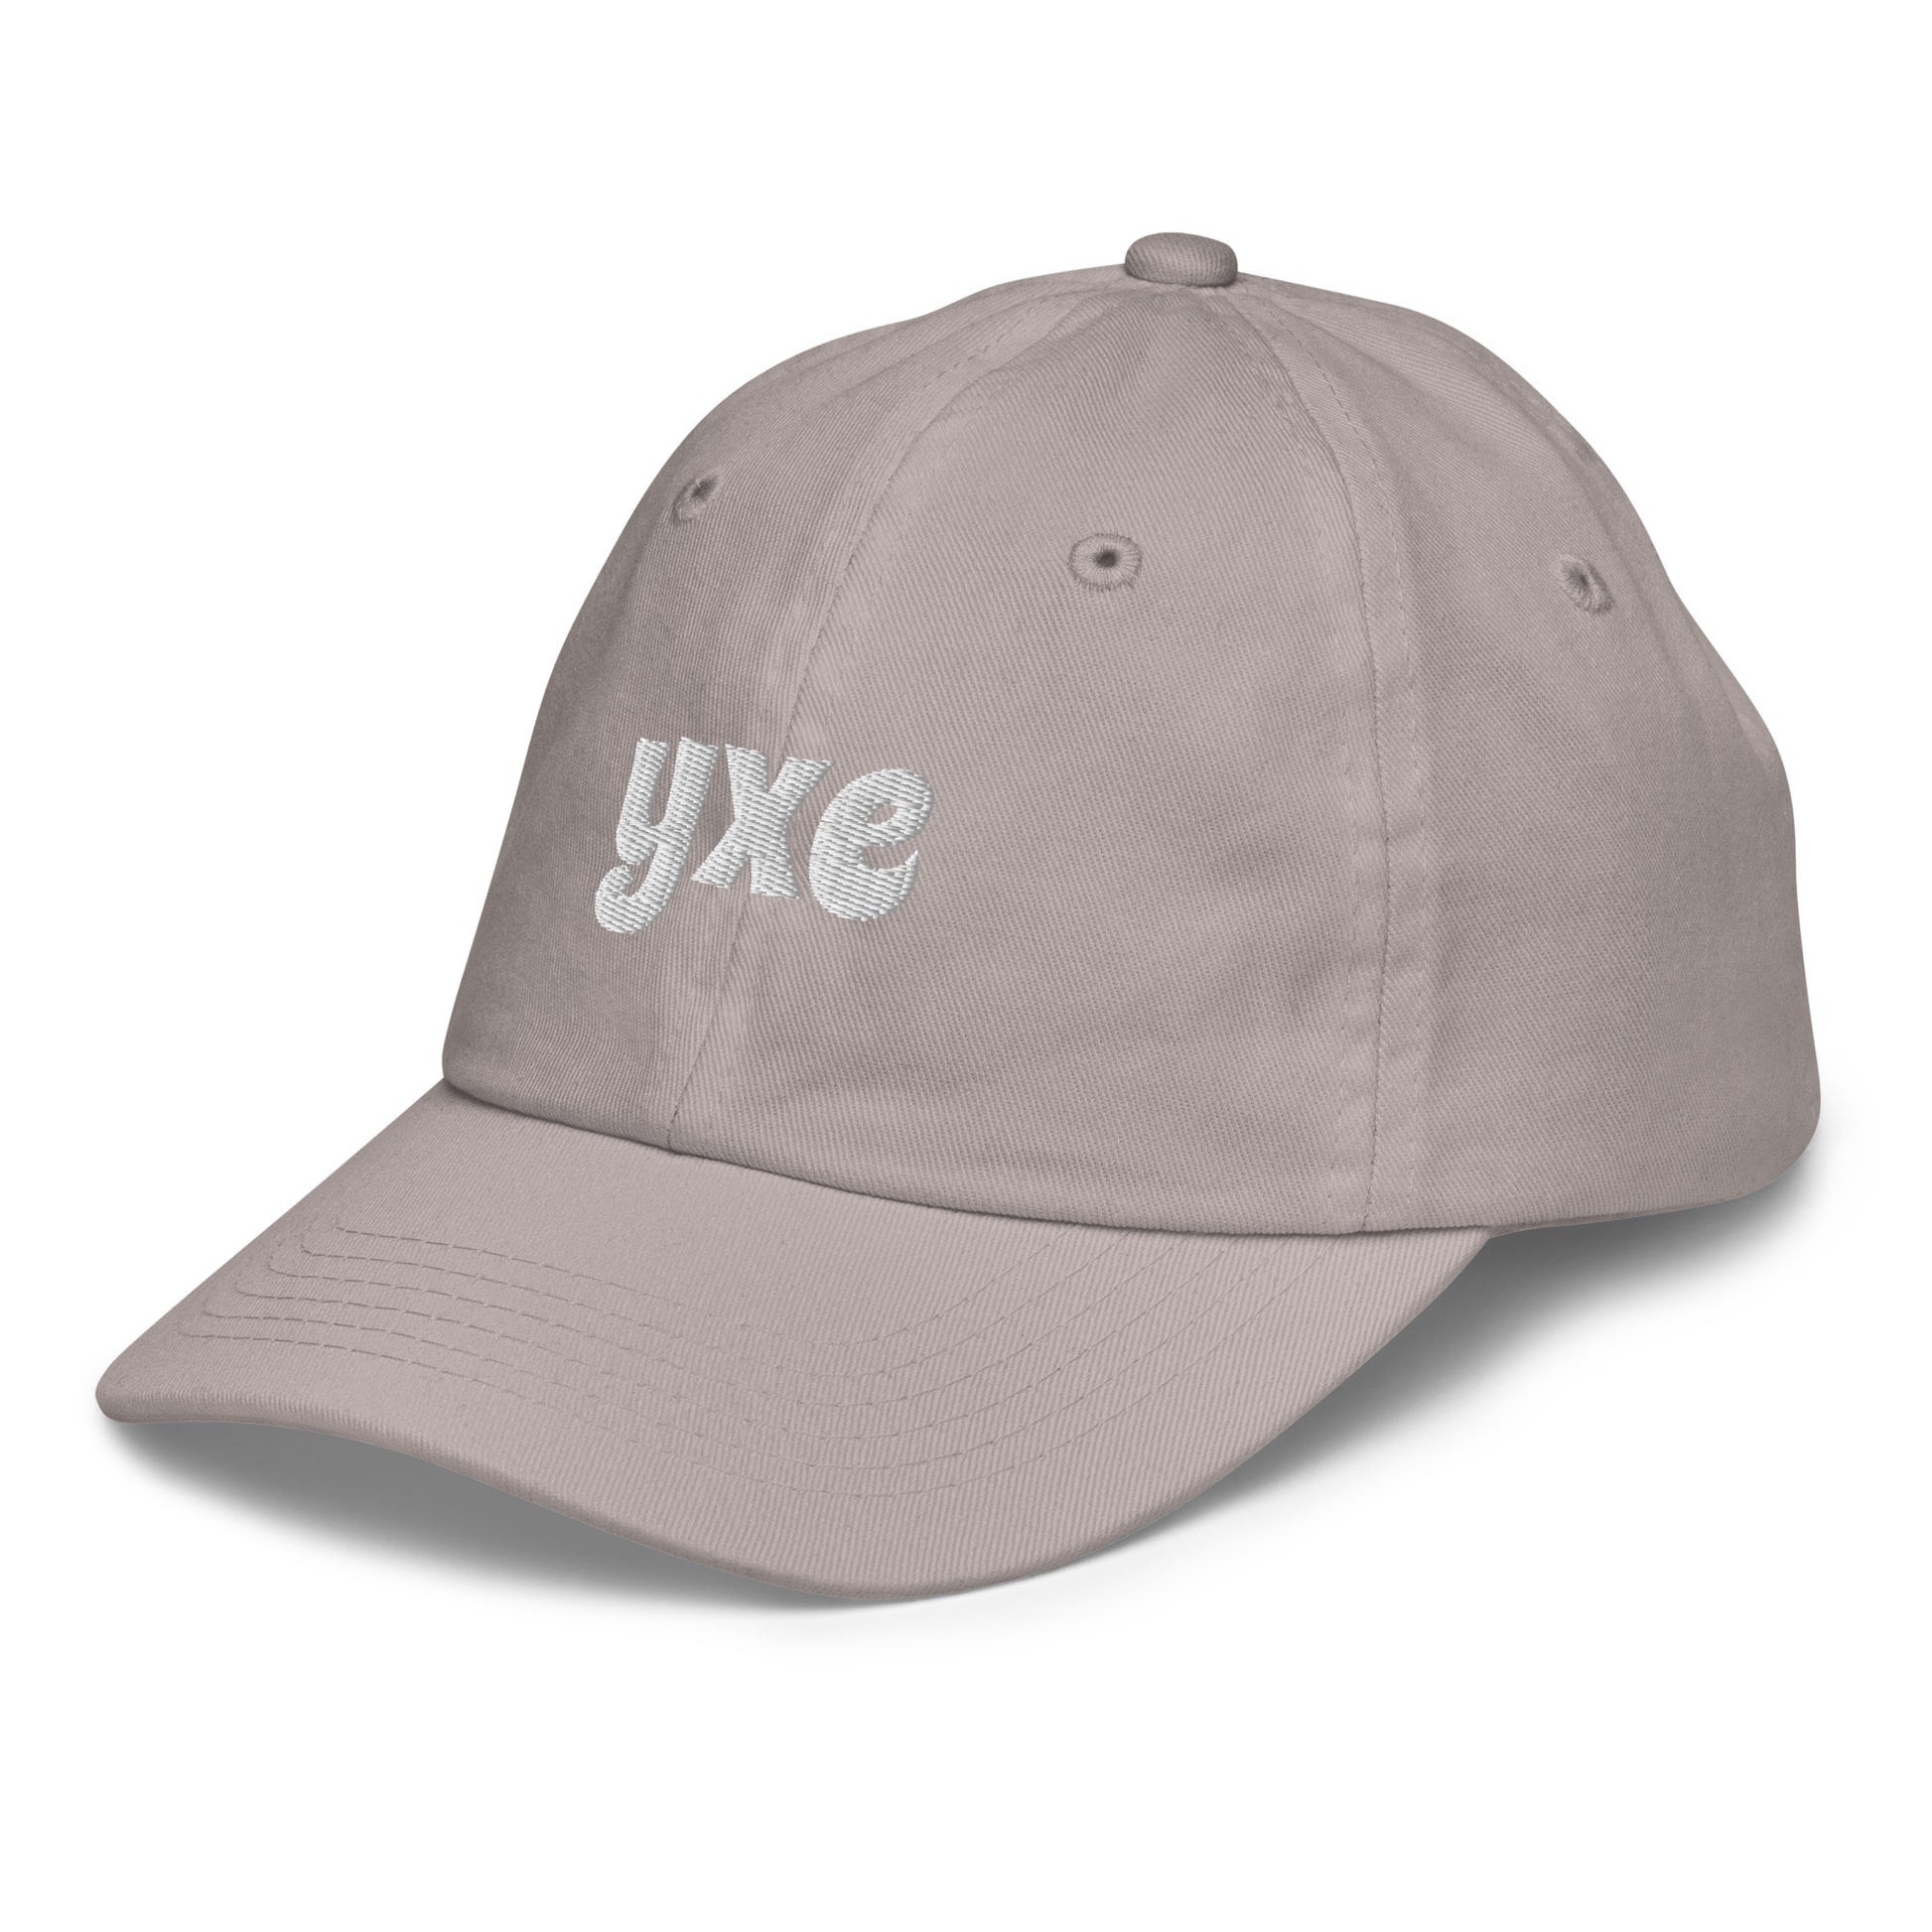 Groovy Kid's Baseball Cap - White • YXE Saskatoon • YHM Designs - Image 20